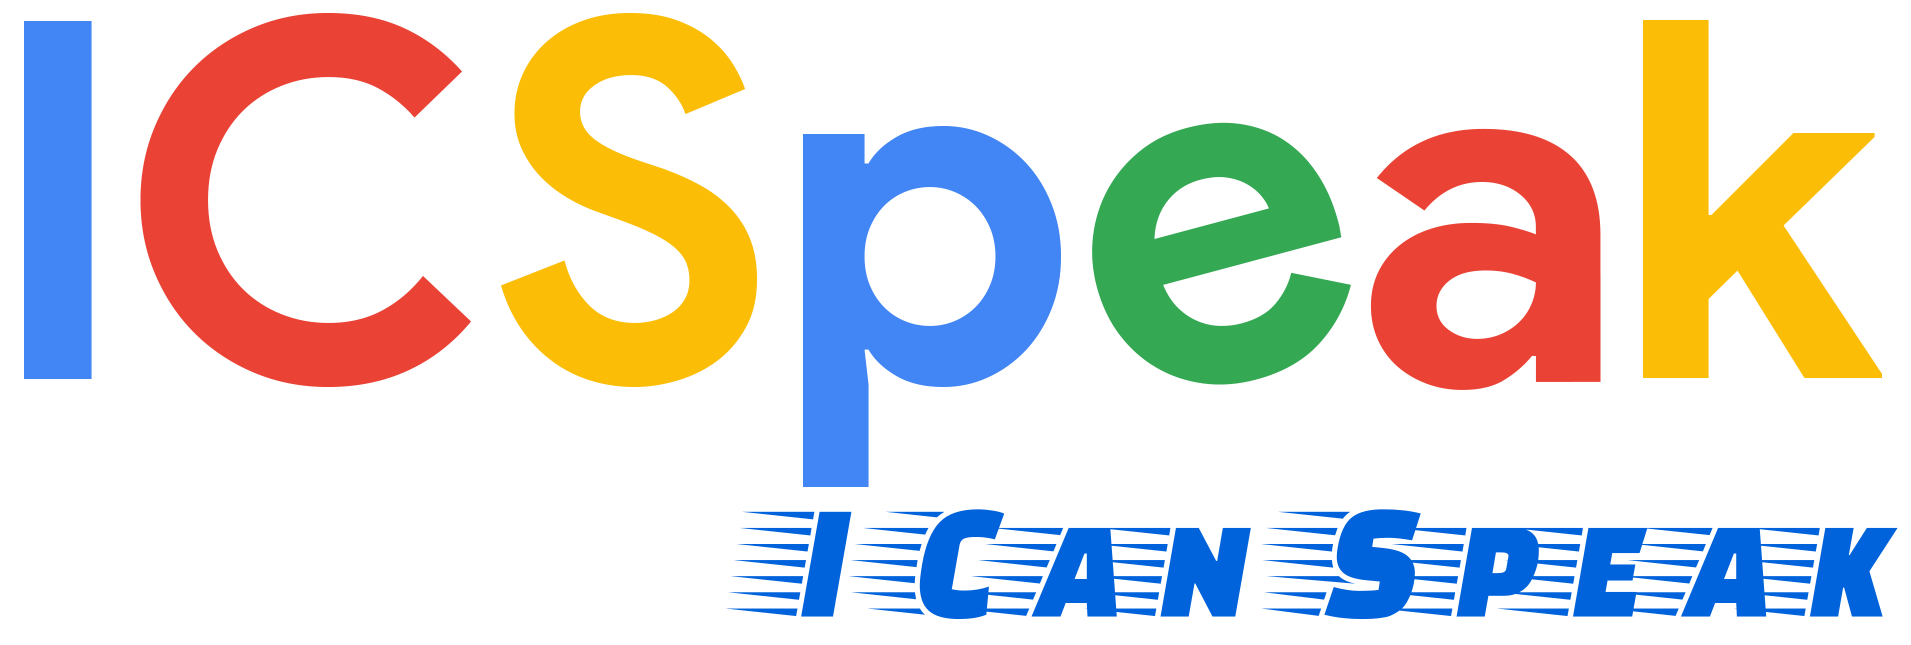 ICSpeak - I Can Speak